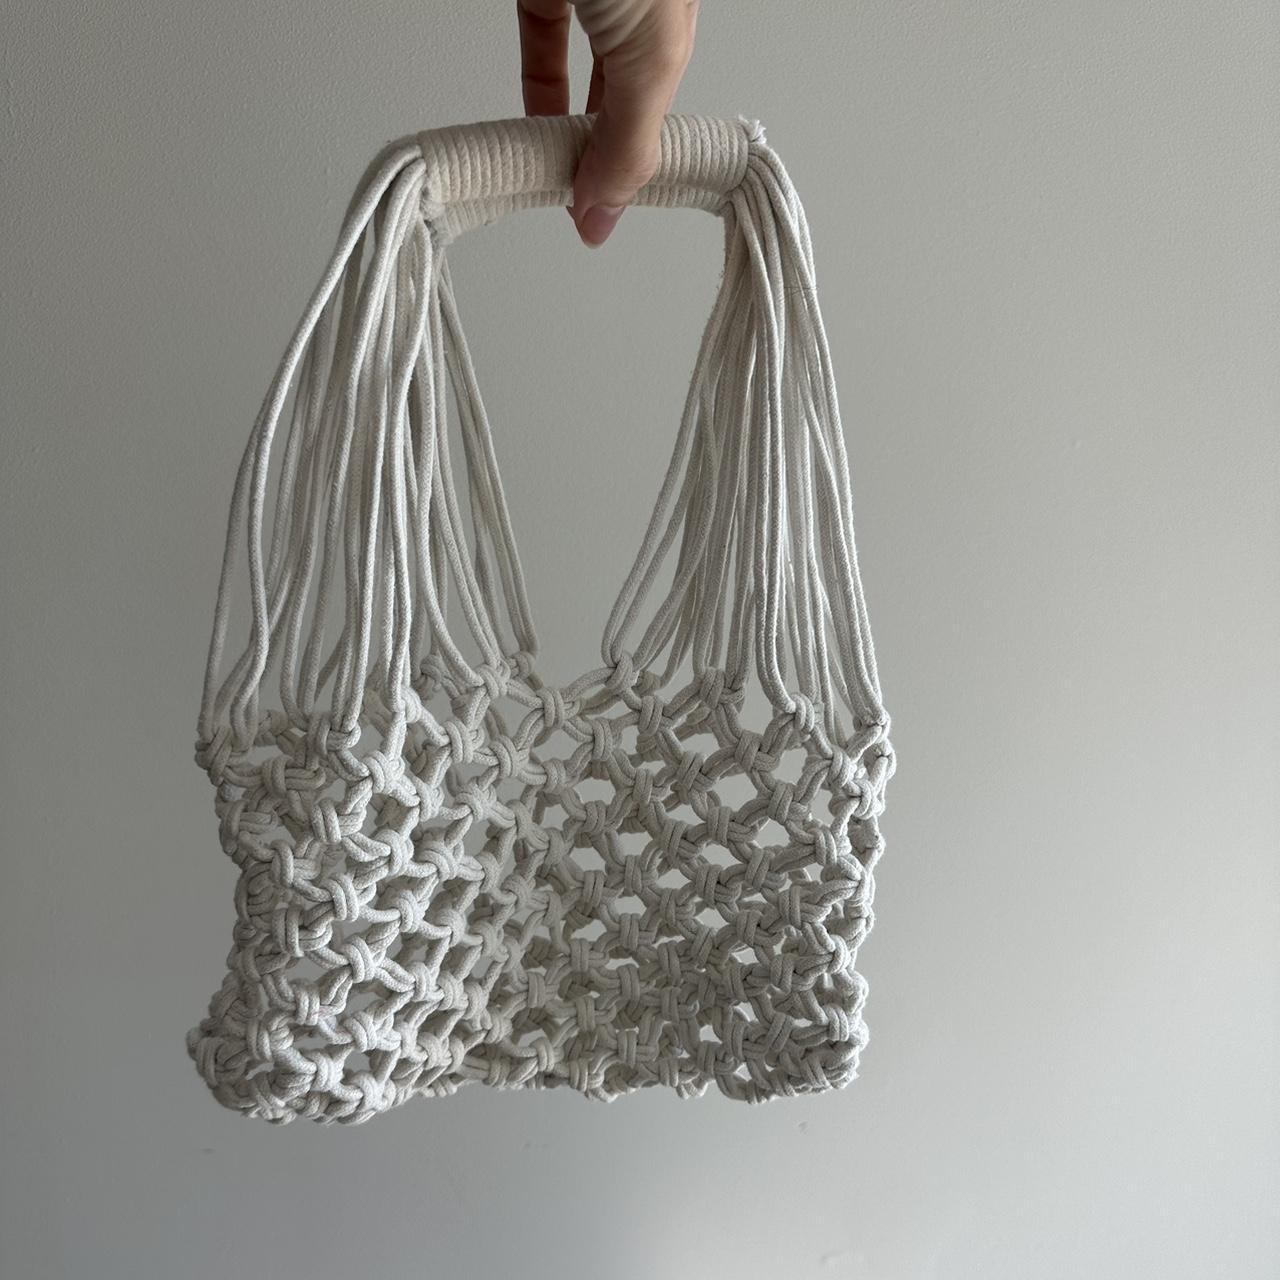 A Brand new Hermes Birkin bag - Depop